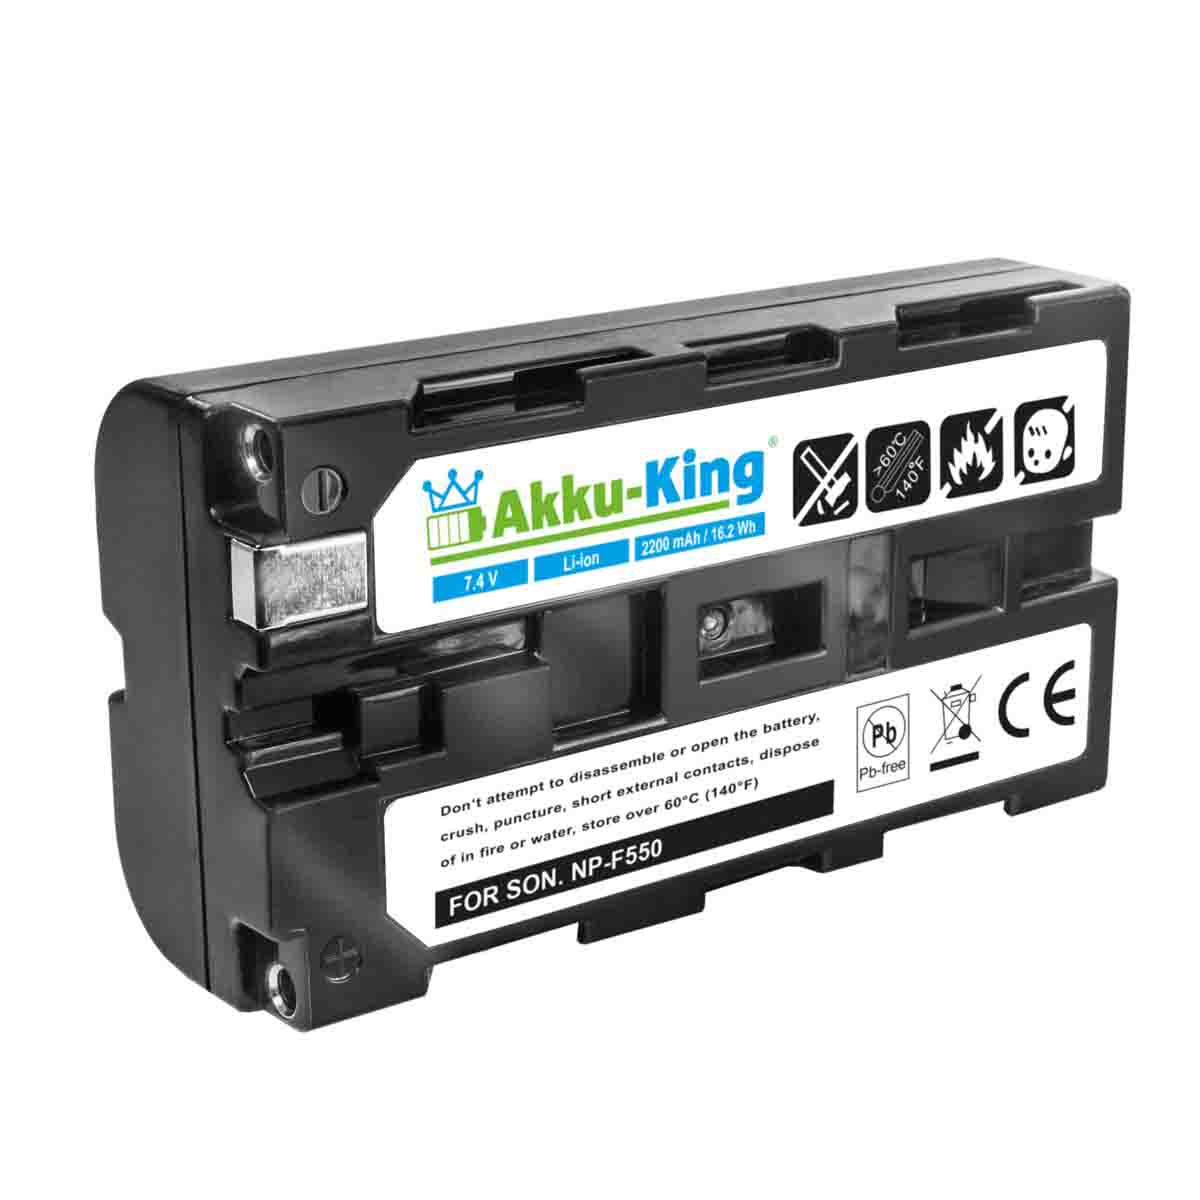 mit 2200mAh 7.4 Akku AKKU-KING kompatibel Geräte-Akku, Li-Ion LT2F2200 Volt, Futaba